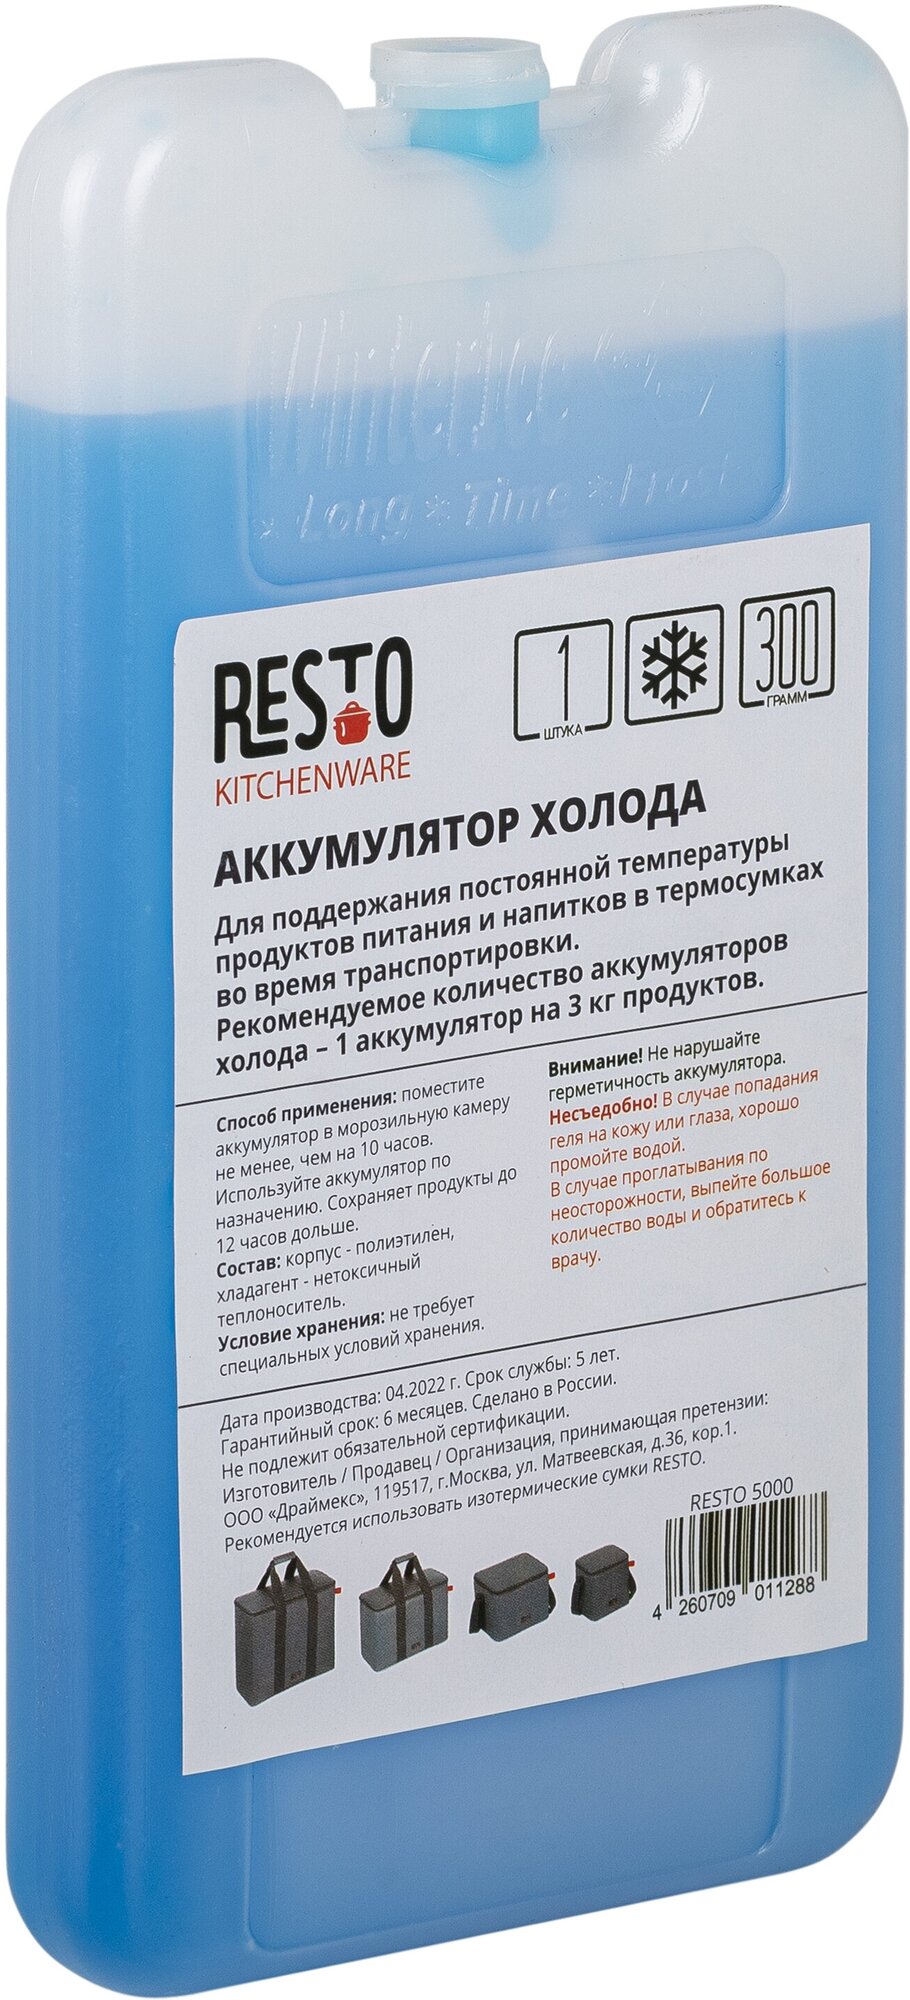 Аккумулятор холода RESTO 5000 (300 гр), 1 шт